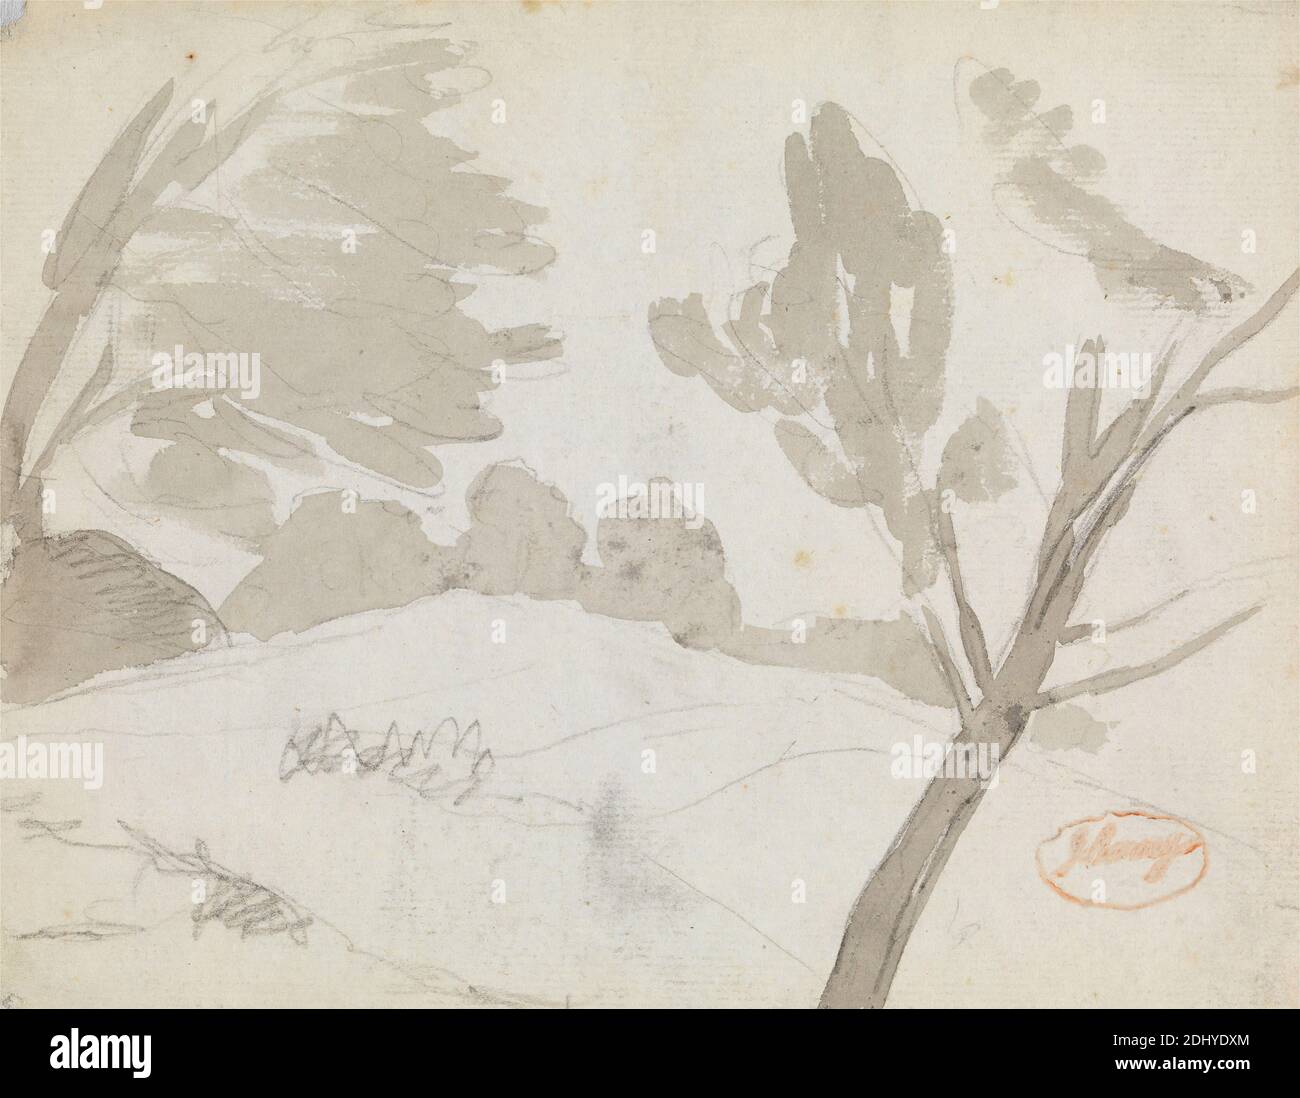 Paysage, George Romney, 1734–1802, Britannique, non daté, gris laver sur graphite sur papier moyen, légèrement texturé, crème posée, feuille: 6 x 8 pouces (15.2 x 20.3 cm), paysage Banque D'Images